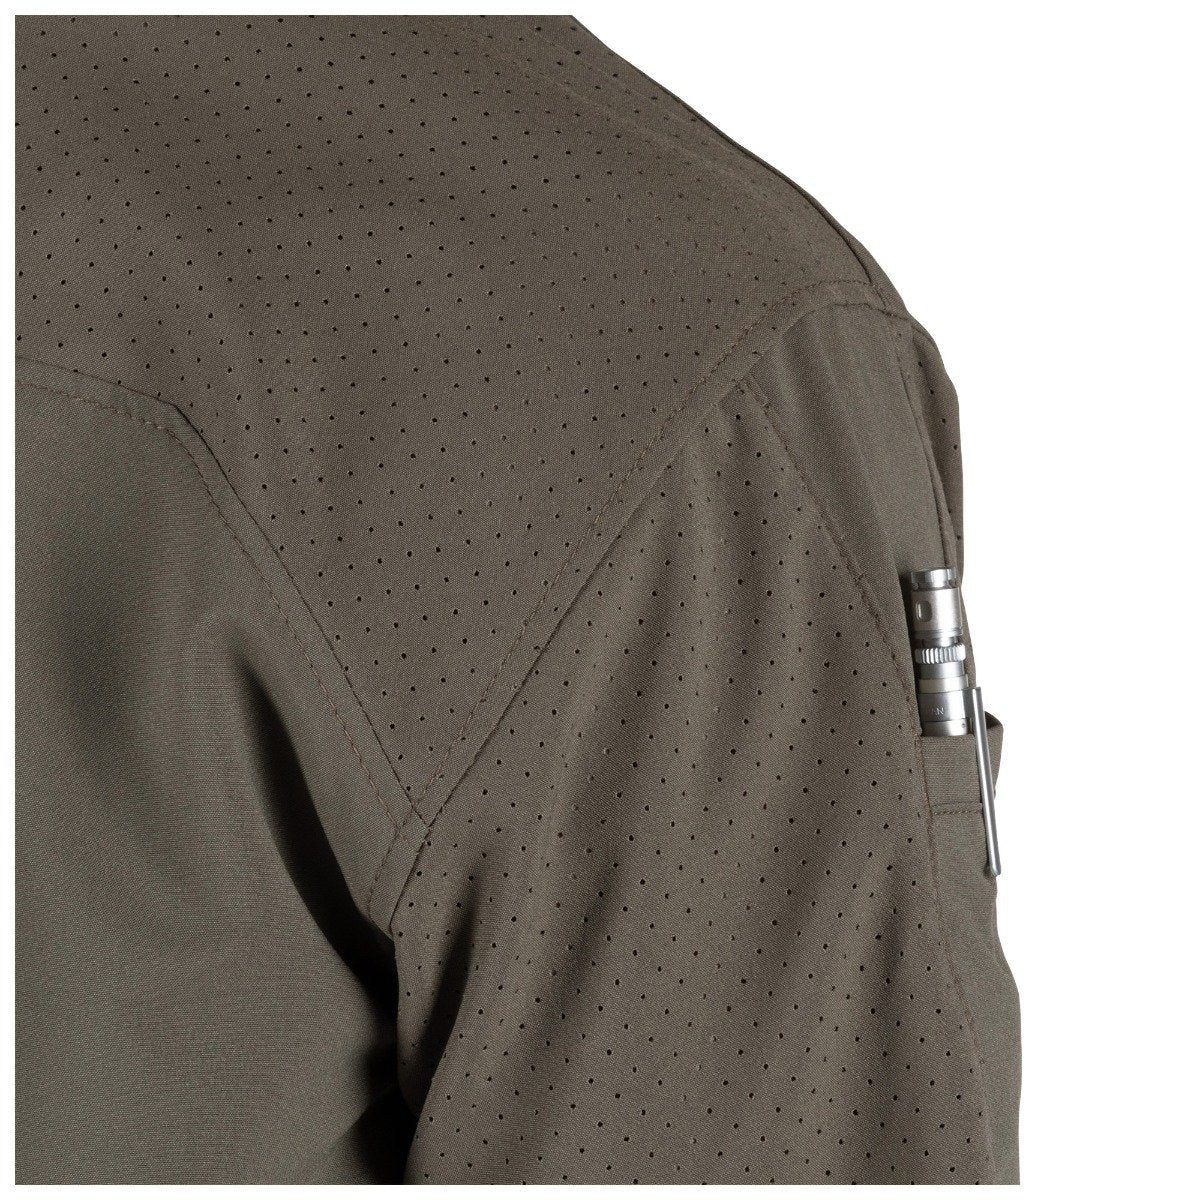 5.11 Tactical Freedom Flex Woven Short Sleeve Shirt Storm Shirts 5.11 Tactical Tactical Gear Supplier Tactical Distributors Australia